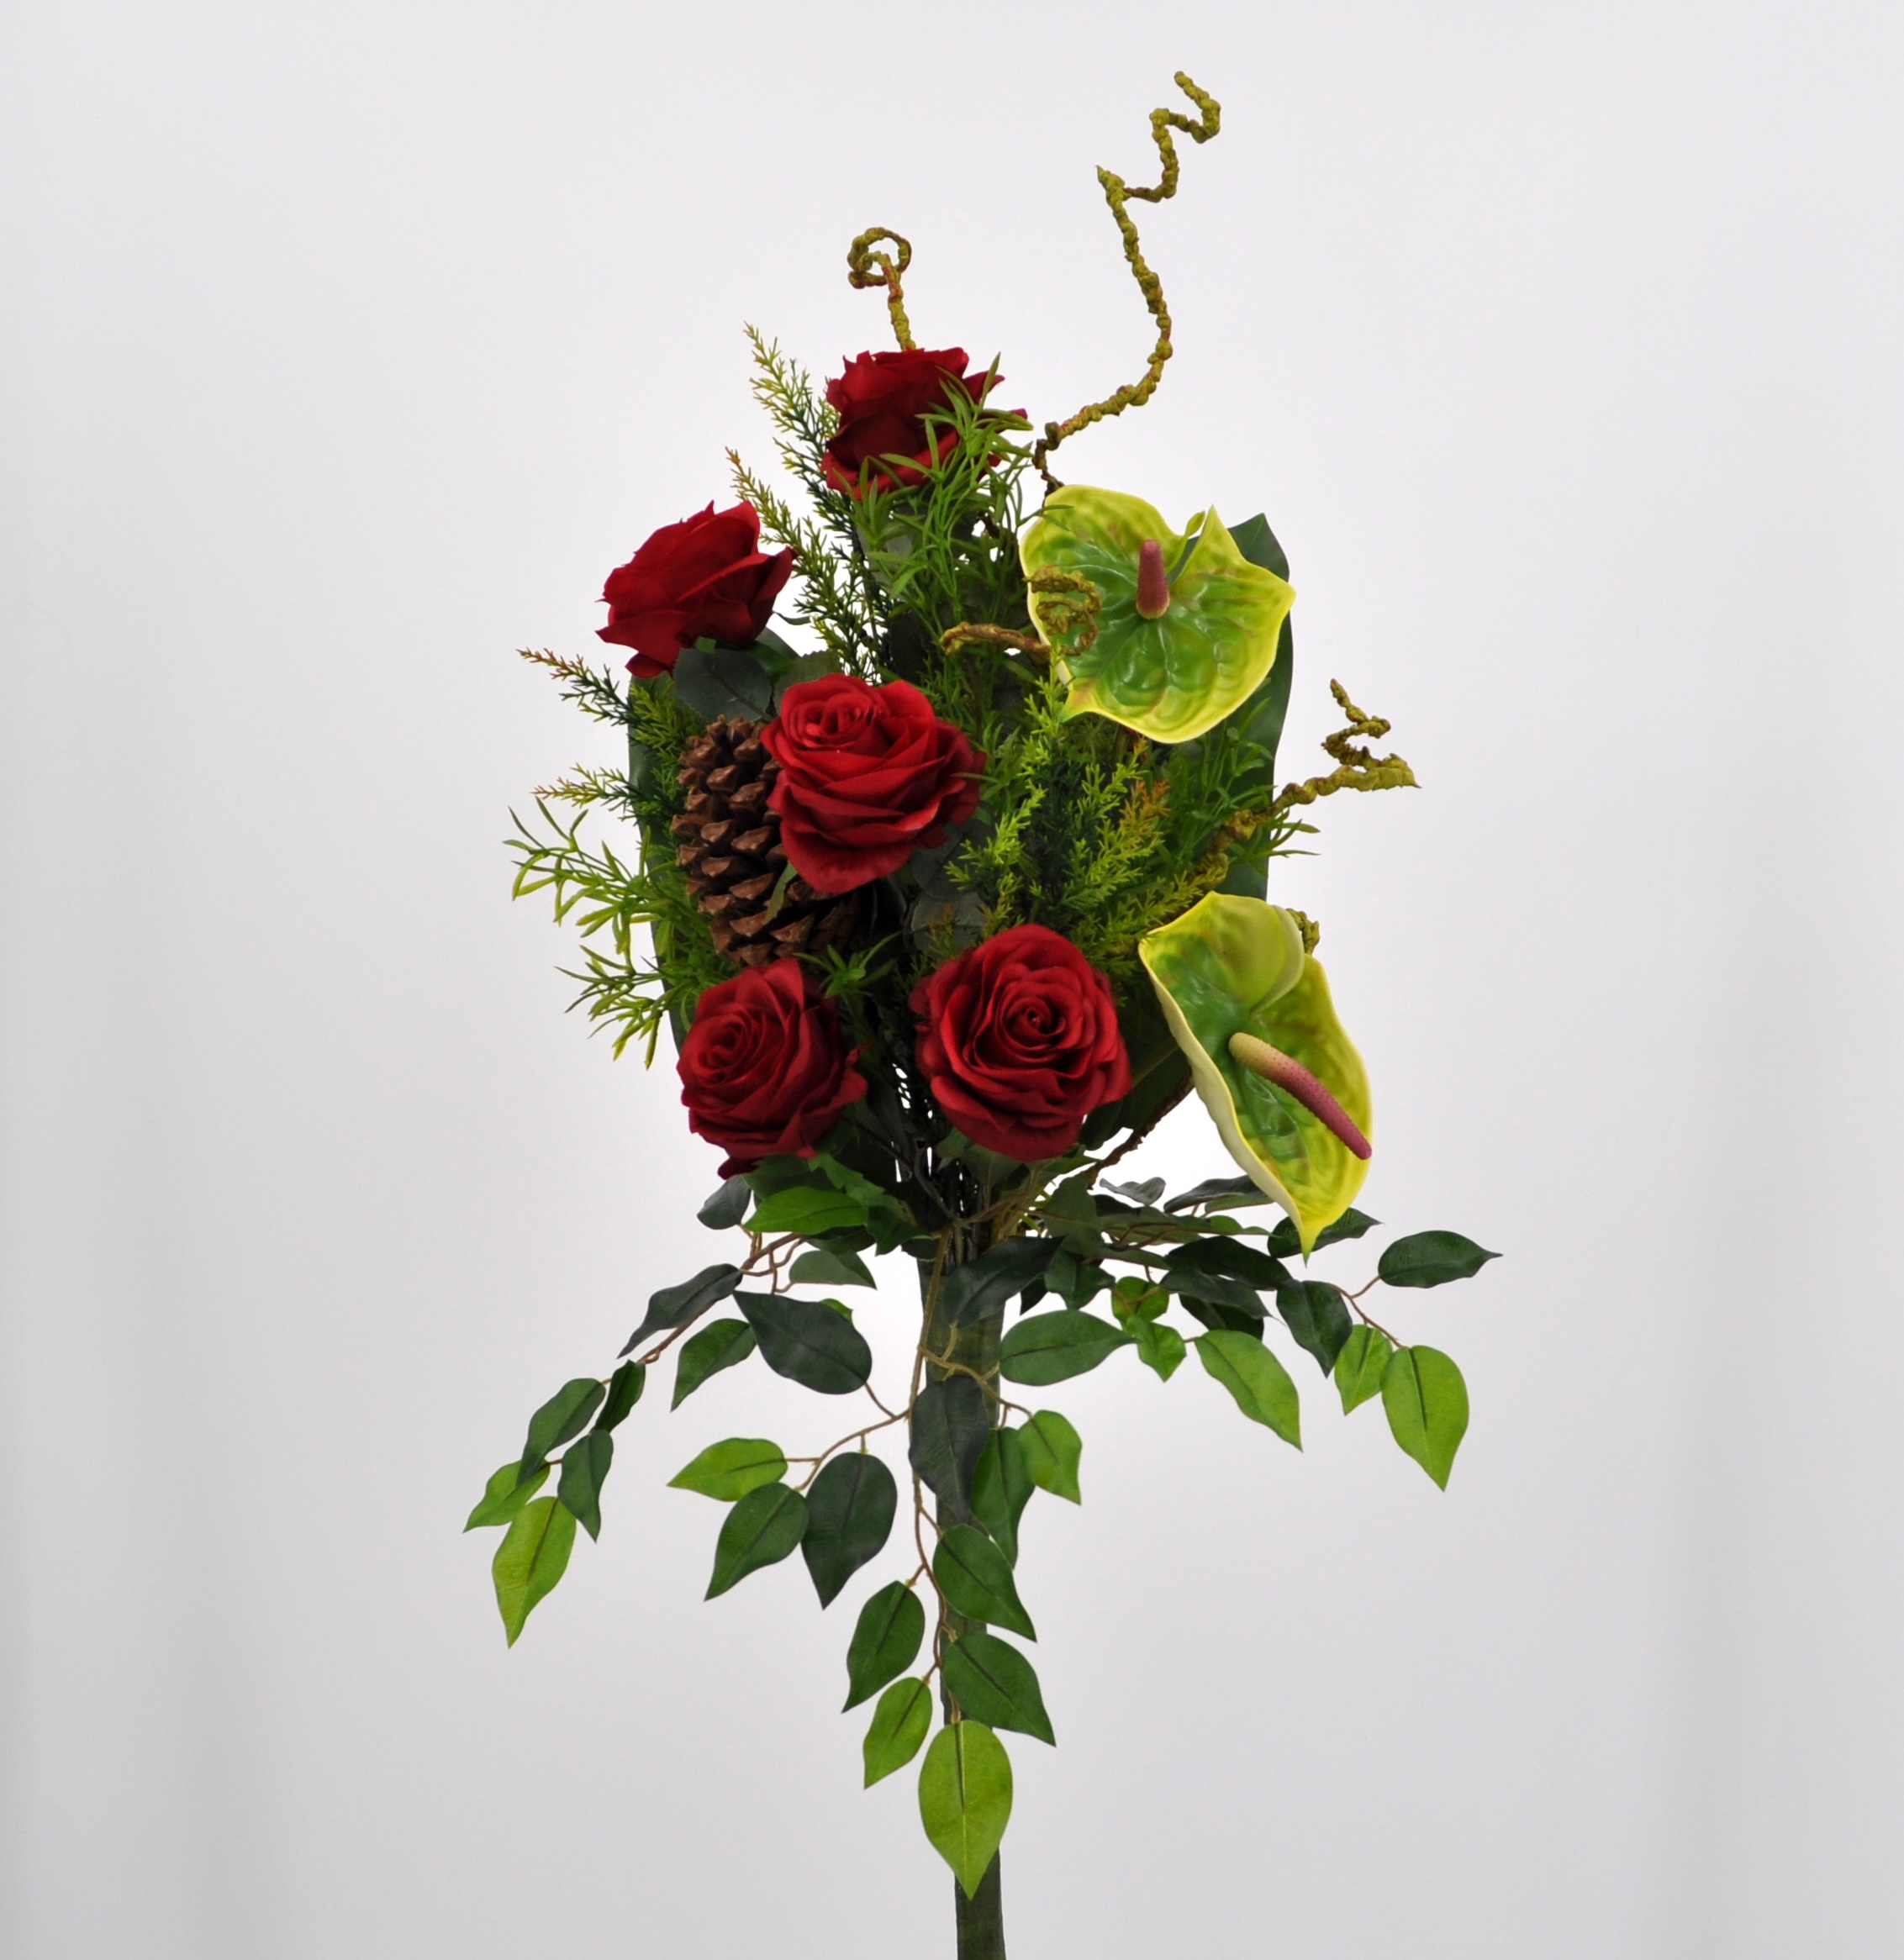 Rosa Anthurium rosso per vasi cimiteriali e luoghi sacri